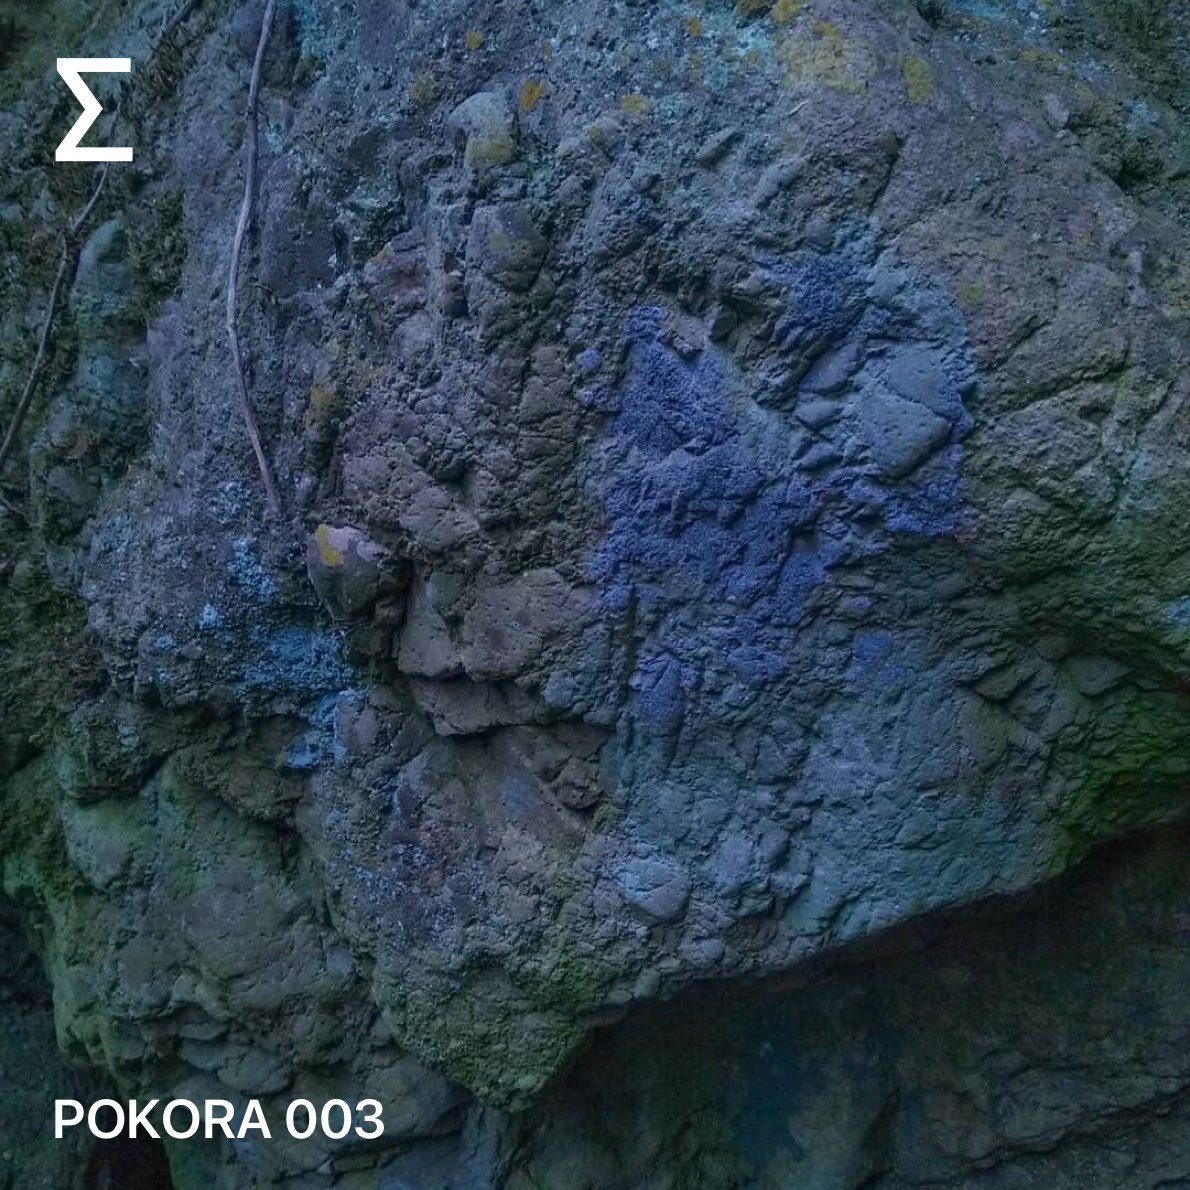 POKORA 003